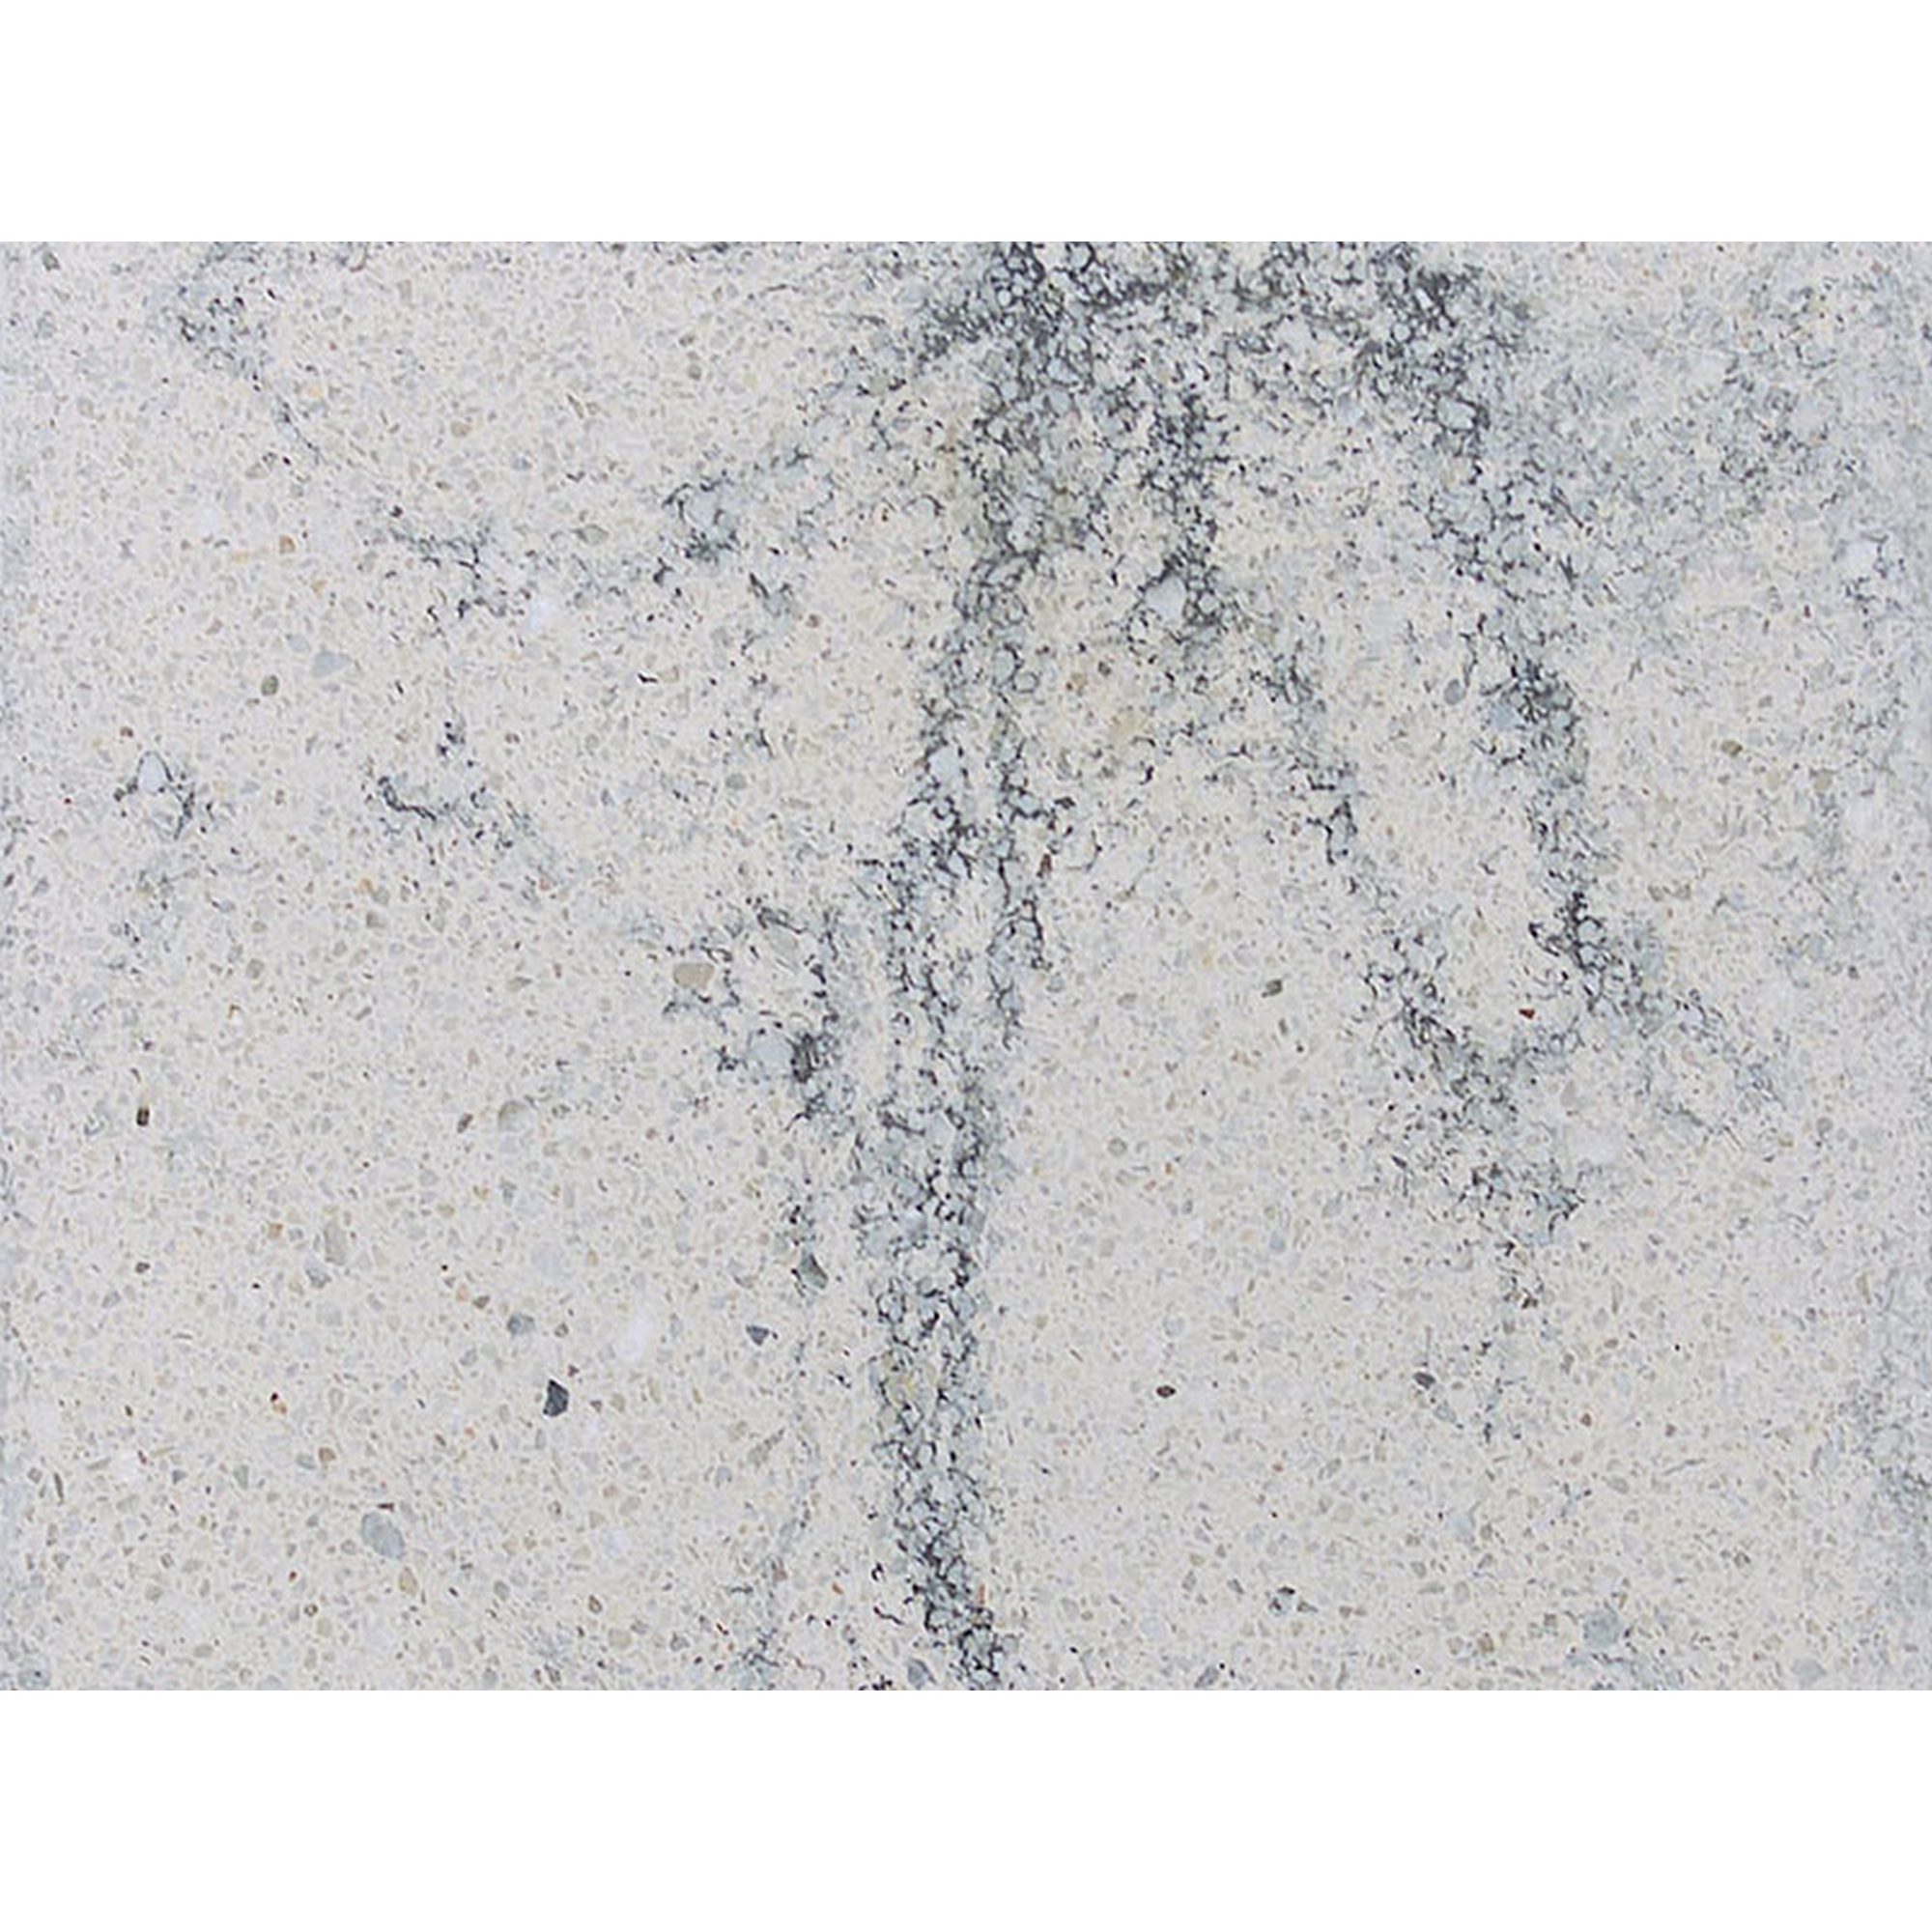 Terrassenplatte 'T-Court Sleek' Beton schwarz/weiß 40 x 40 x 4 cm + product picture